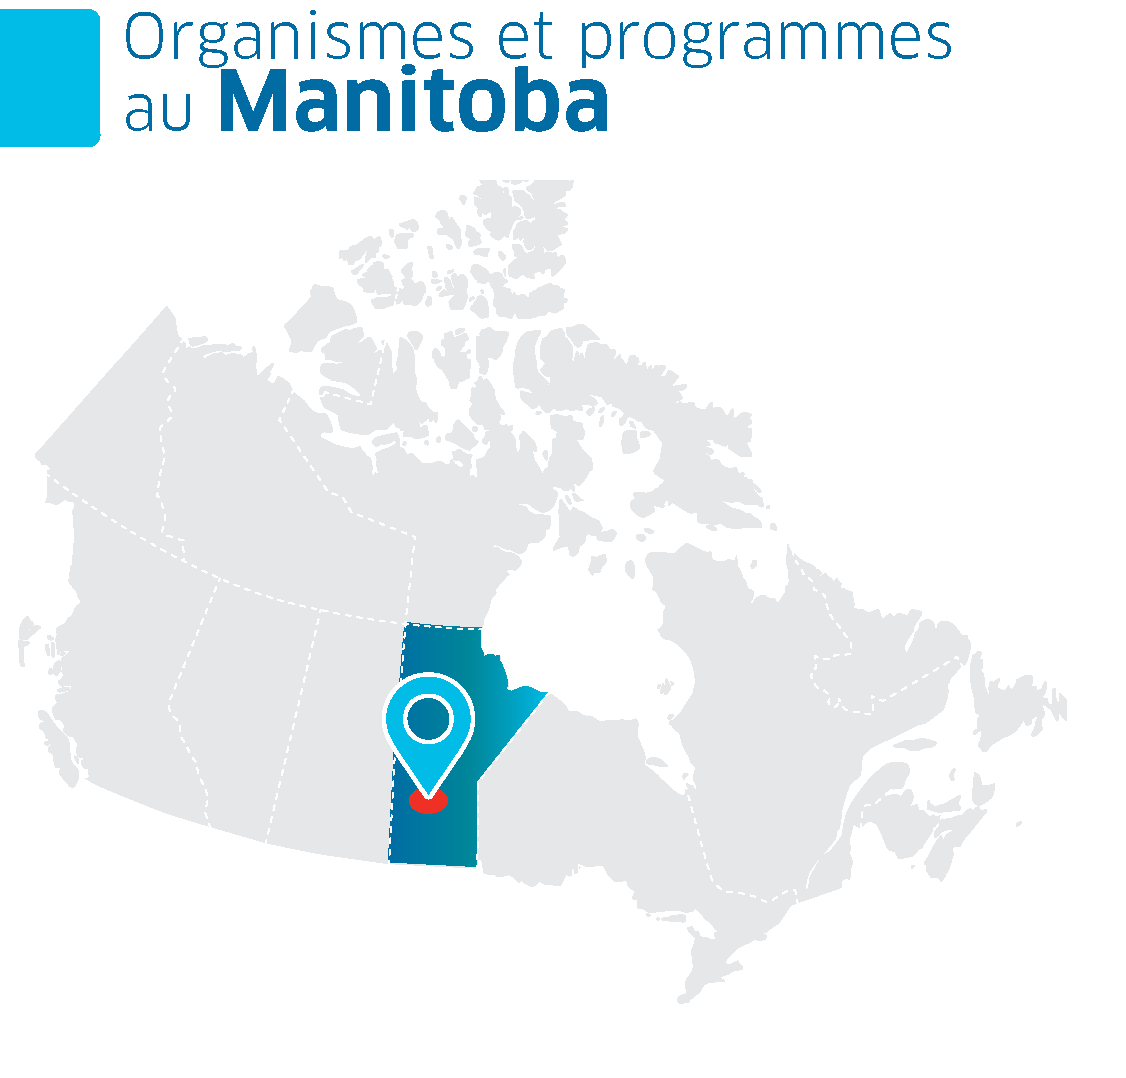 Une carte du Canada avec la province du Manitoba en surbrillance